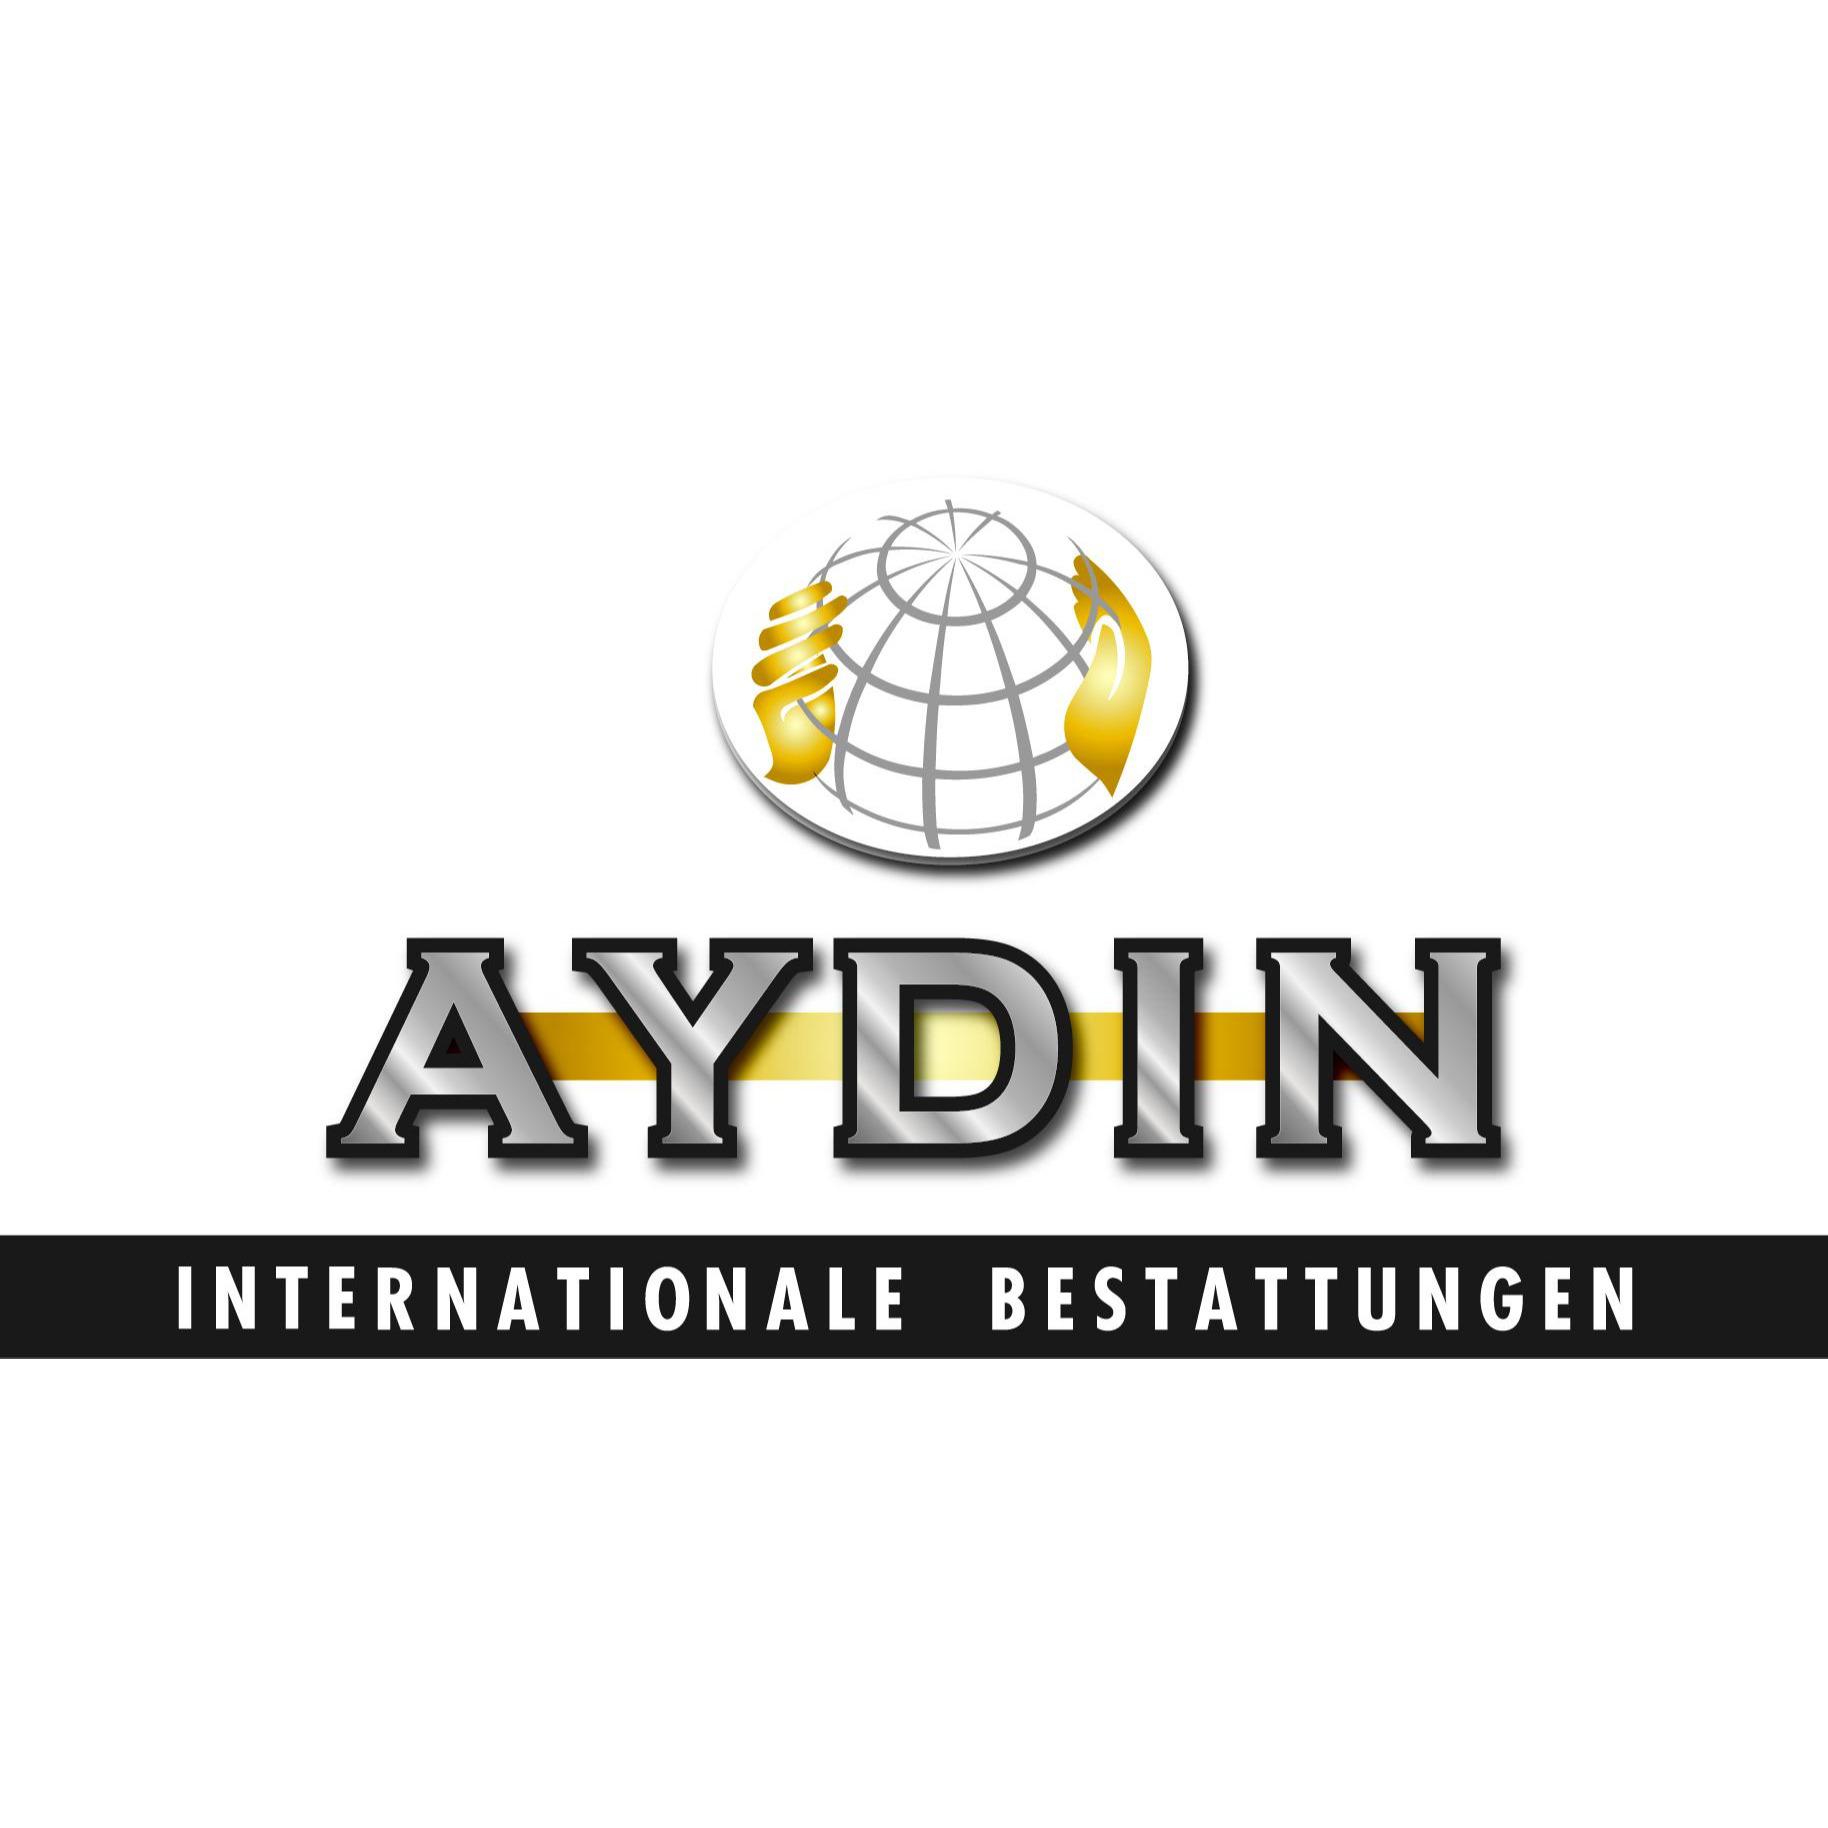 AYDIN Internationale Bestattungen GmbH & Co. KG in Bremen